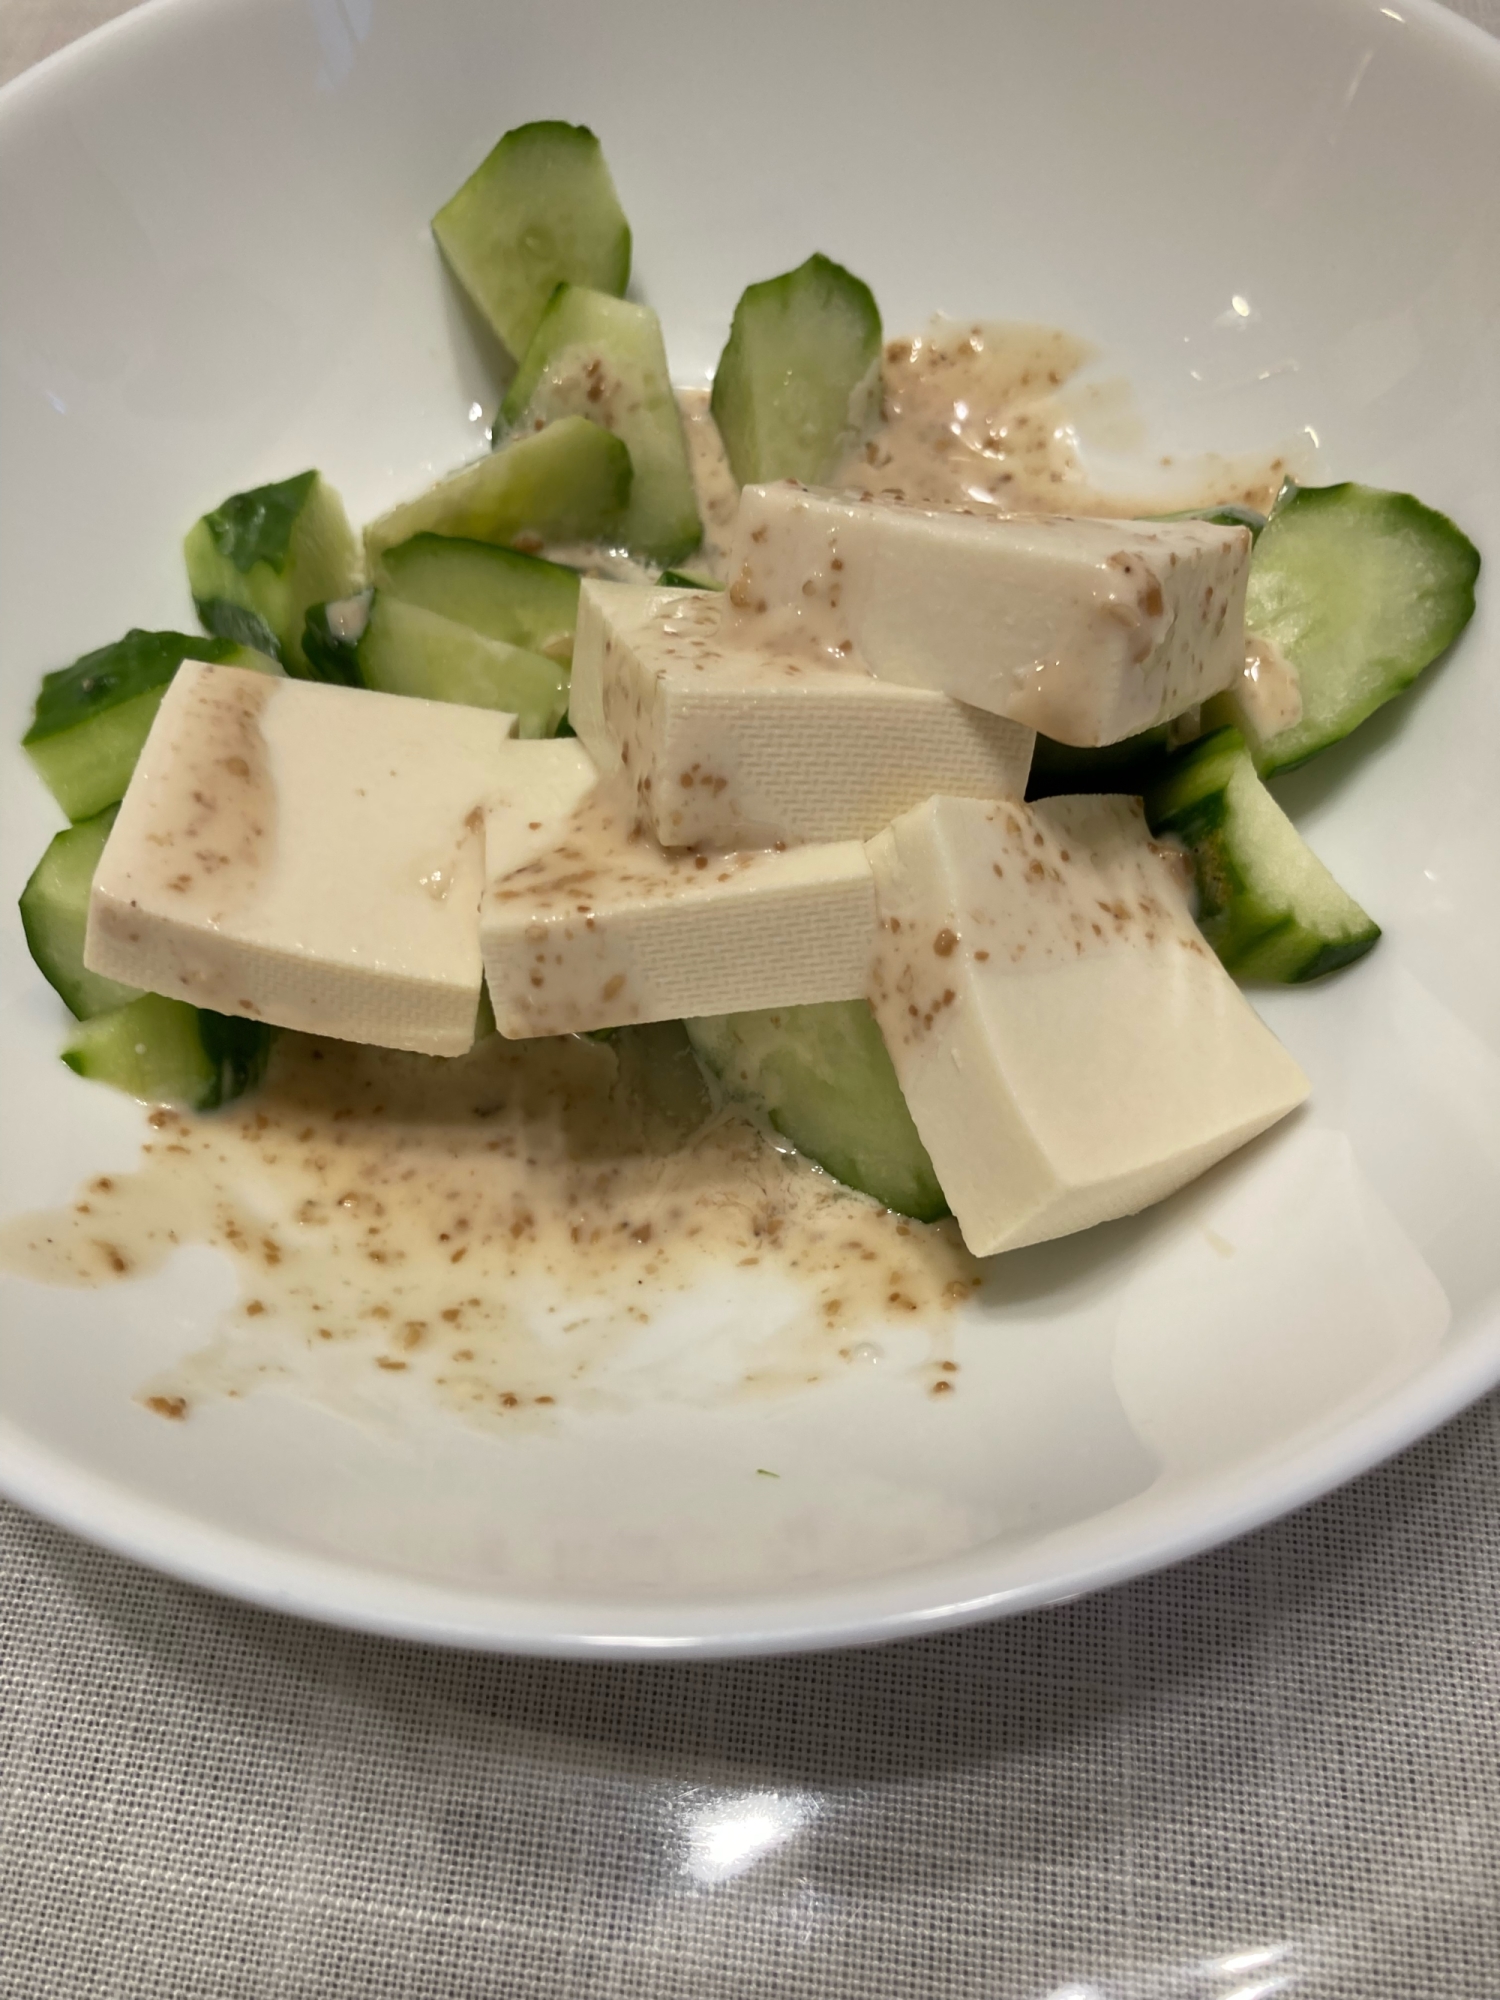 きゅうりと豆腐のサラダ